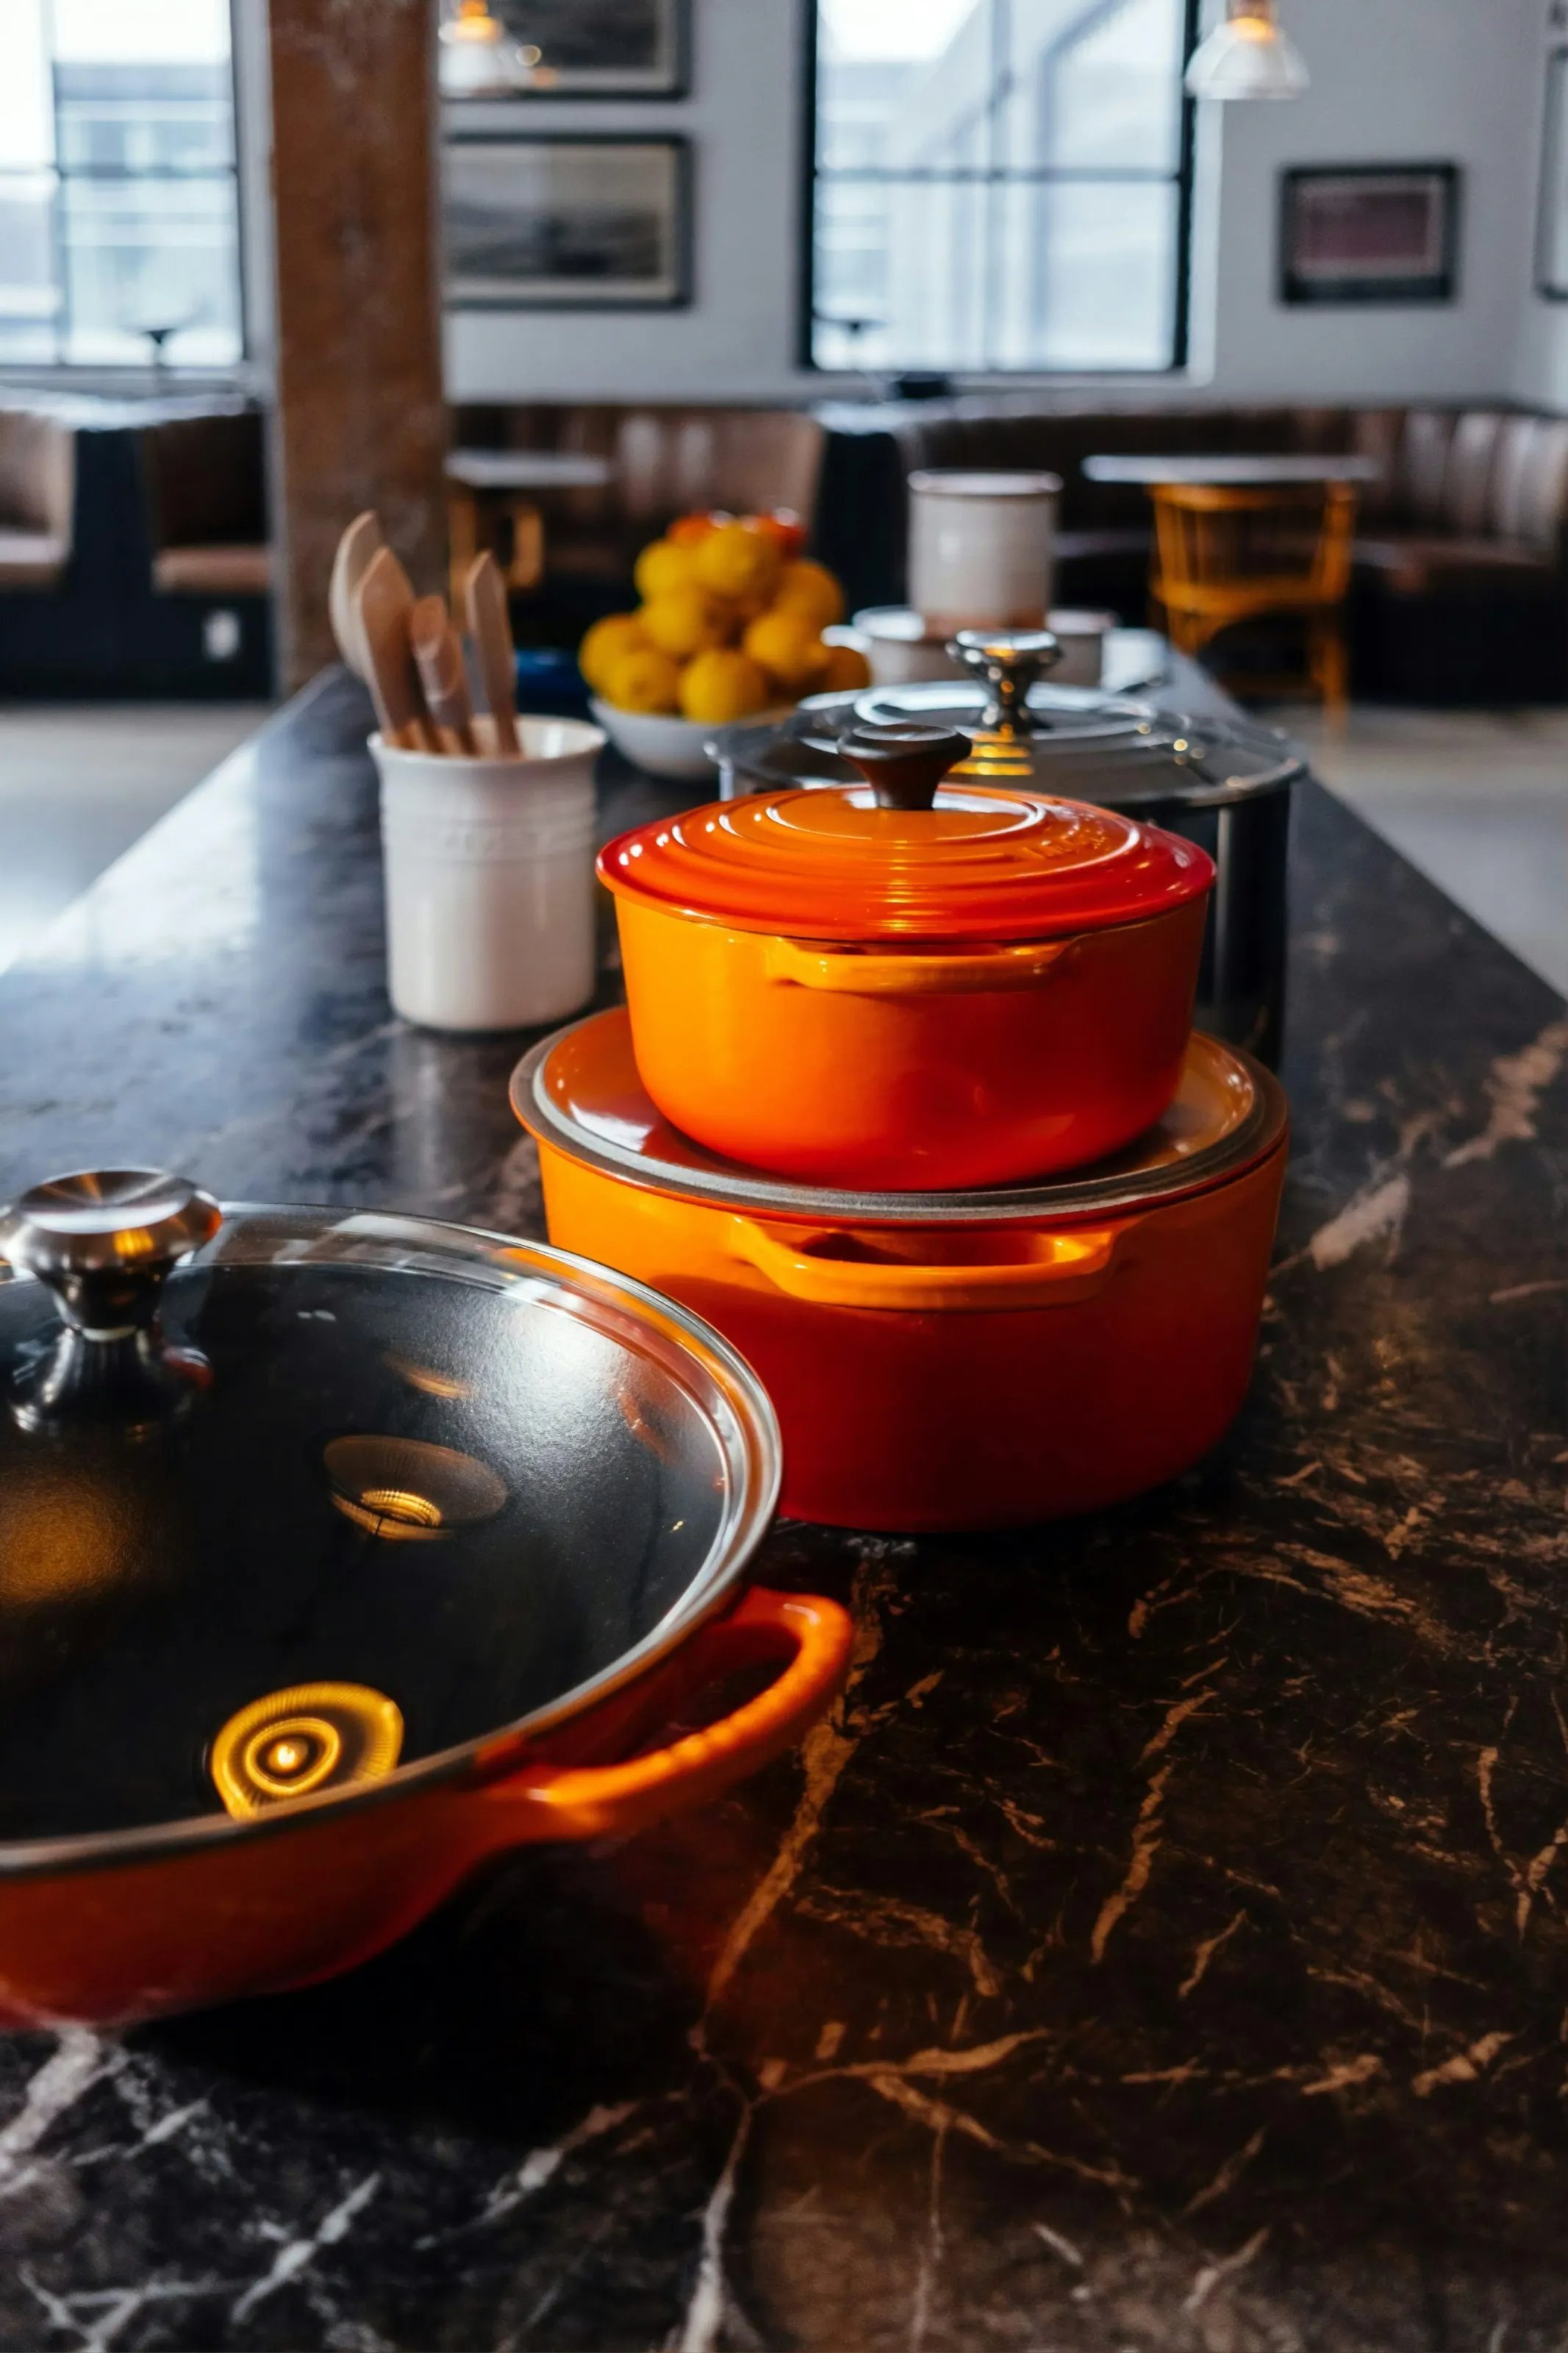 Stockfoto van een keuken met oranje gietijzeren pannen. Foto afkomstig van Unsplash.